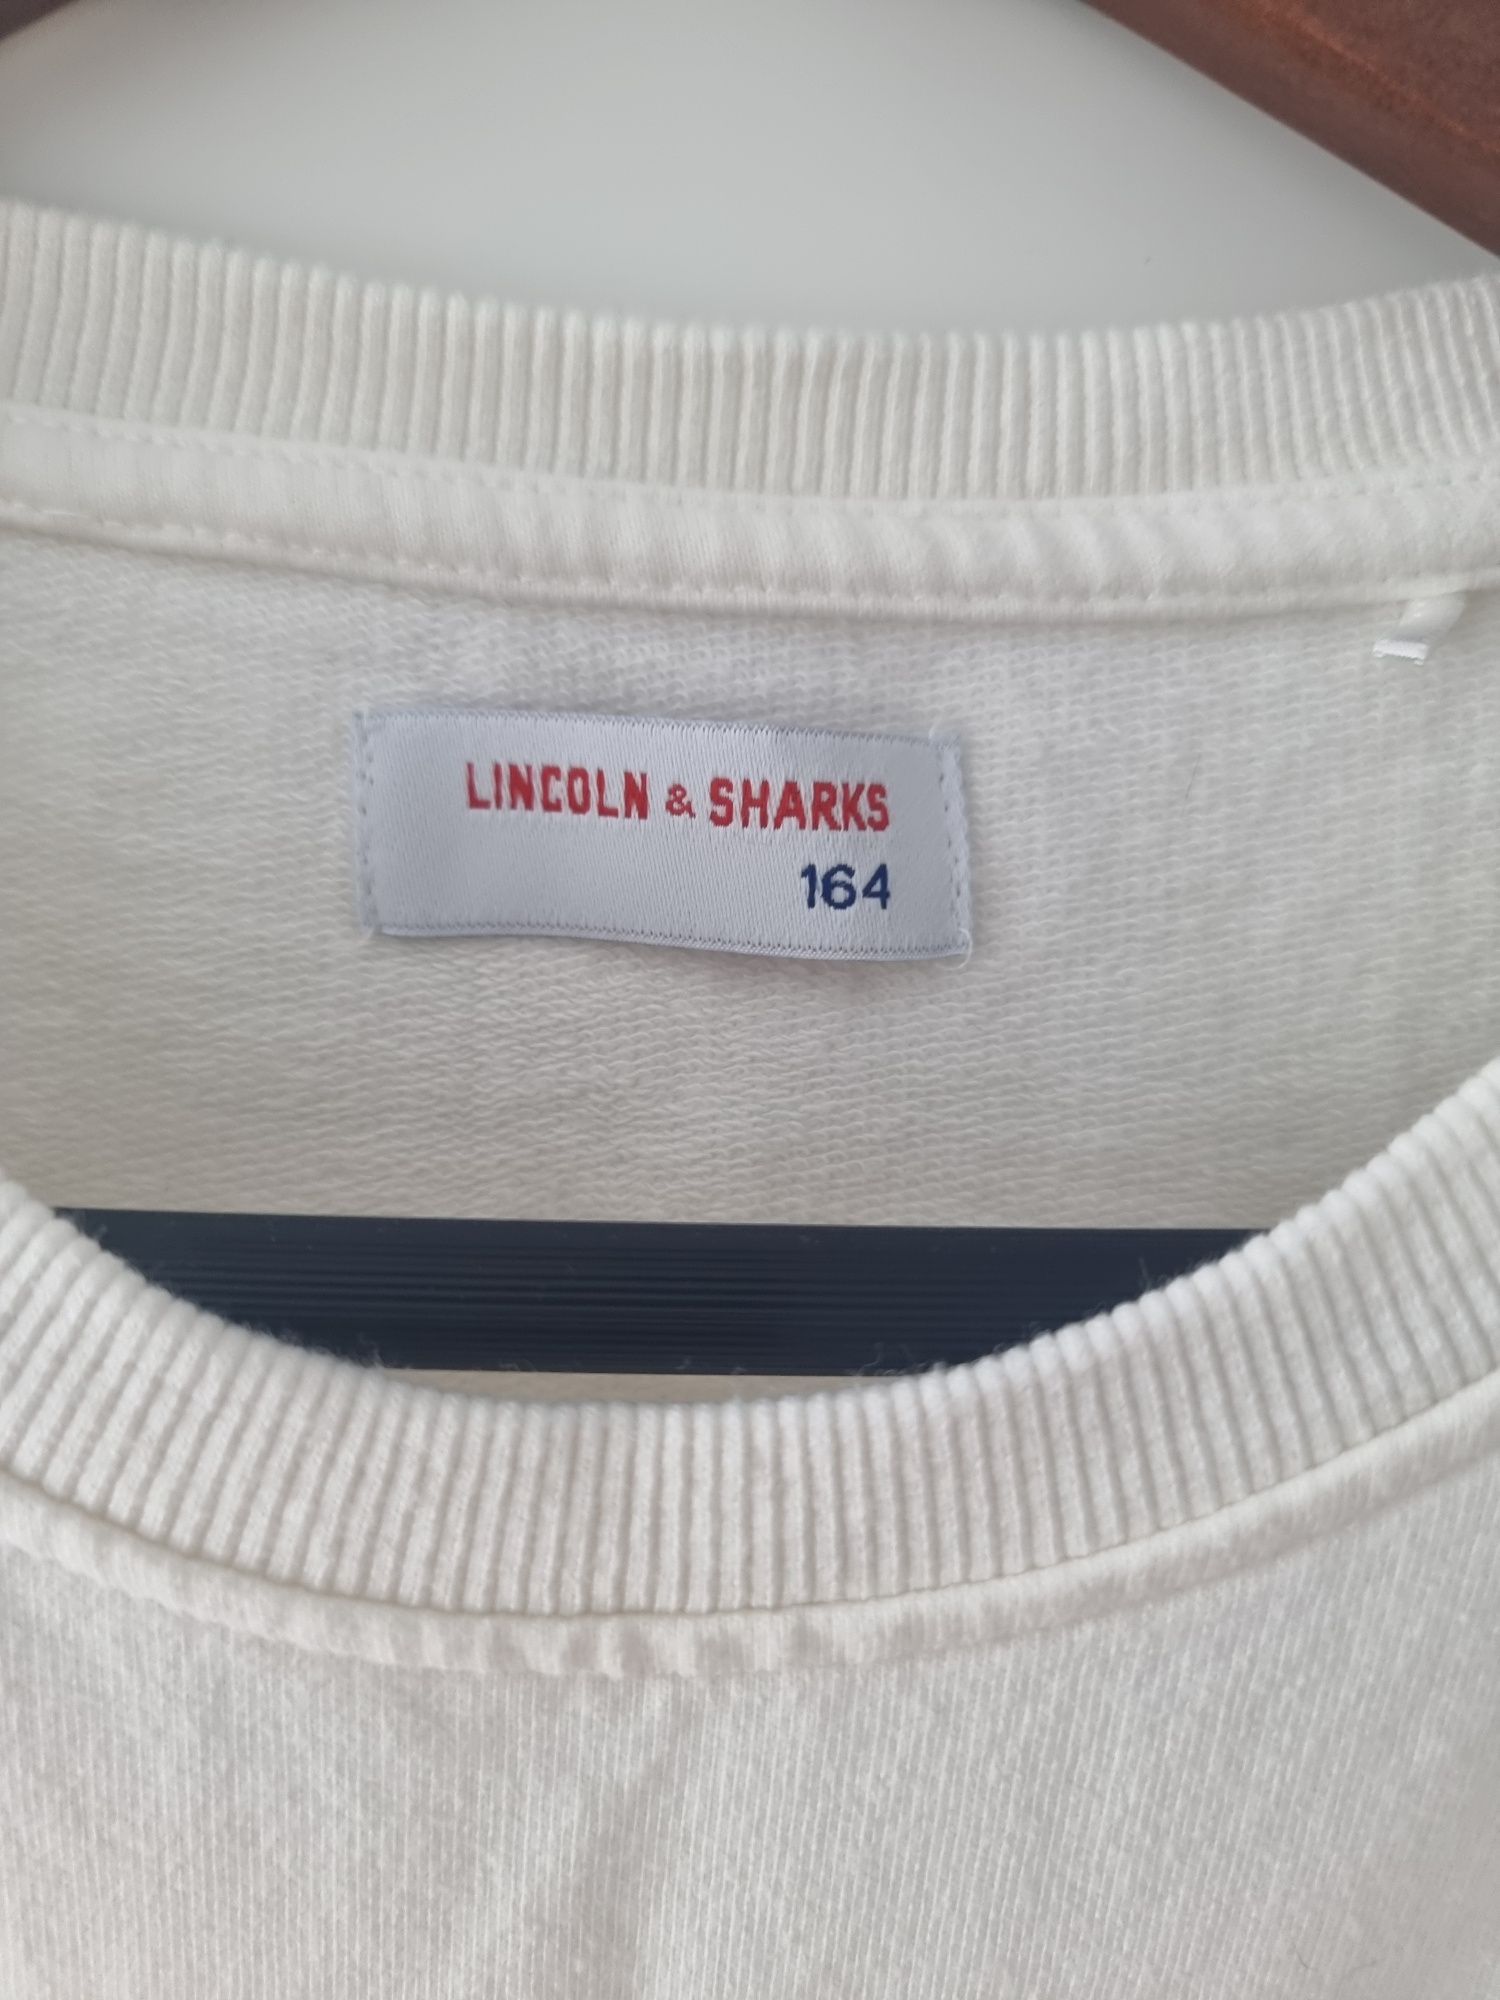 Bluza Lincoln & Sharks 164